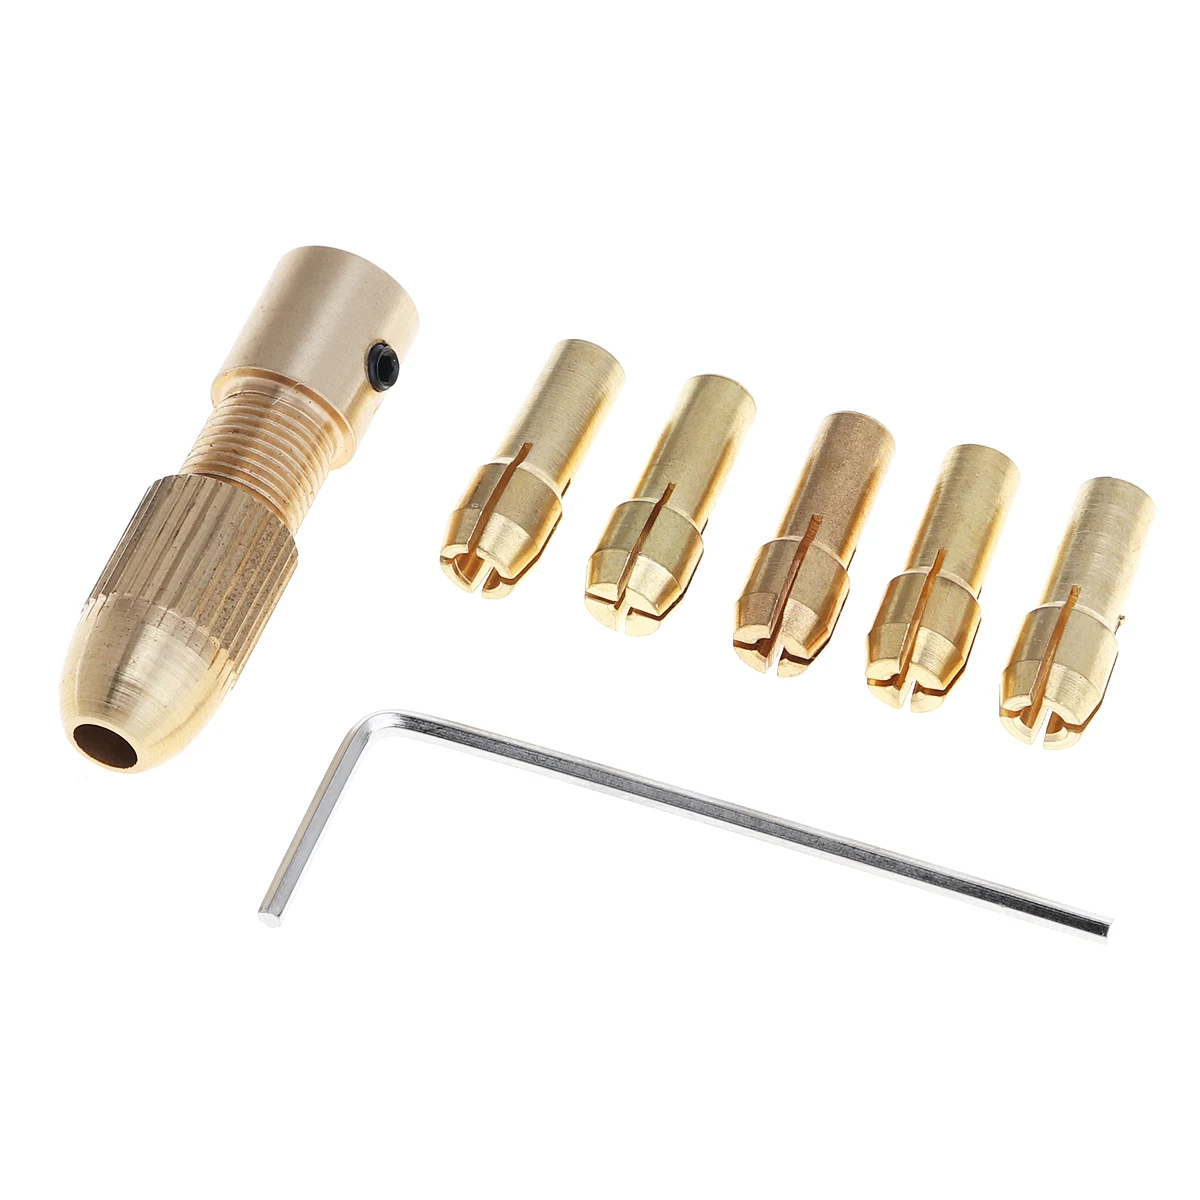 

Mini Drill Brass Collet Chuck 7pcs/lot 2.35/3.17mm Drill Chucks support 0.5 - 3.0MM Drill Bit for ABS Board Light Board Punch